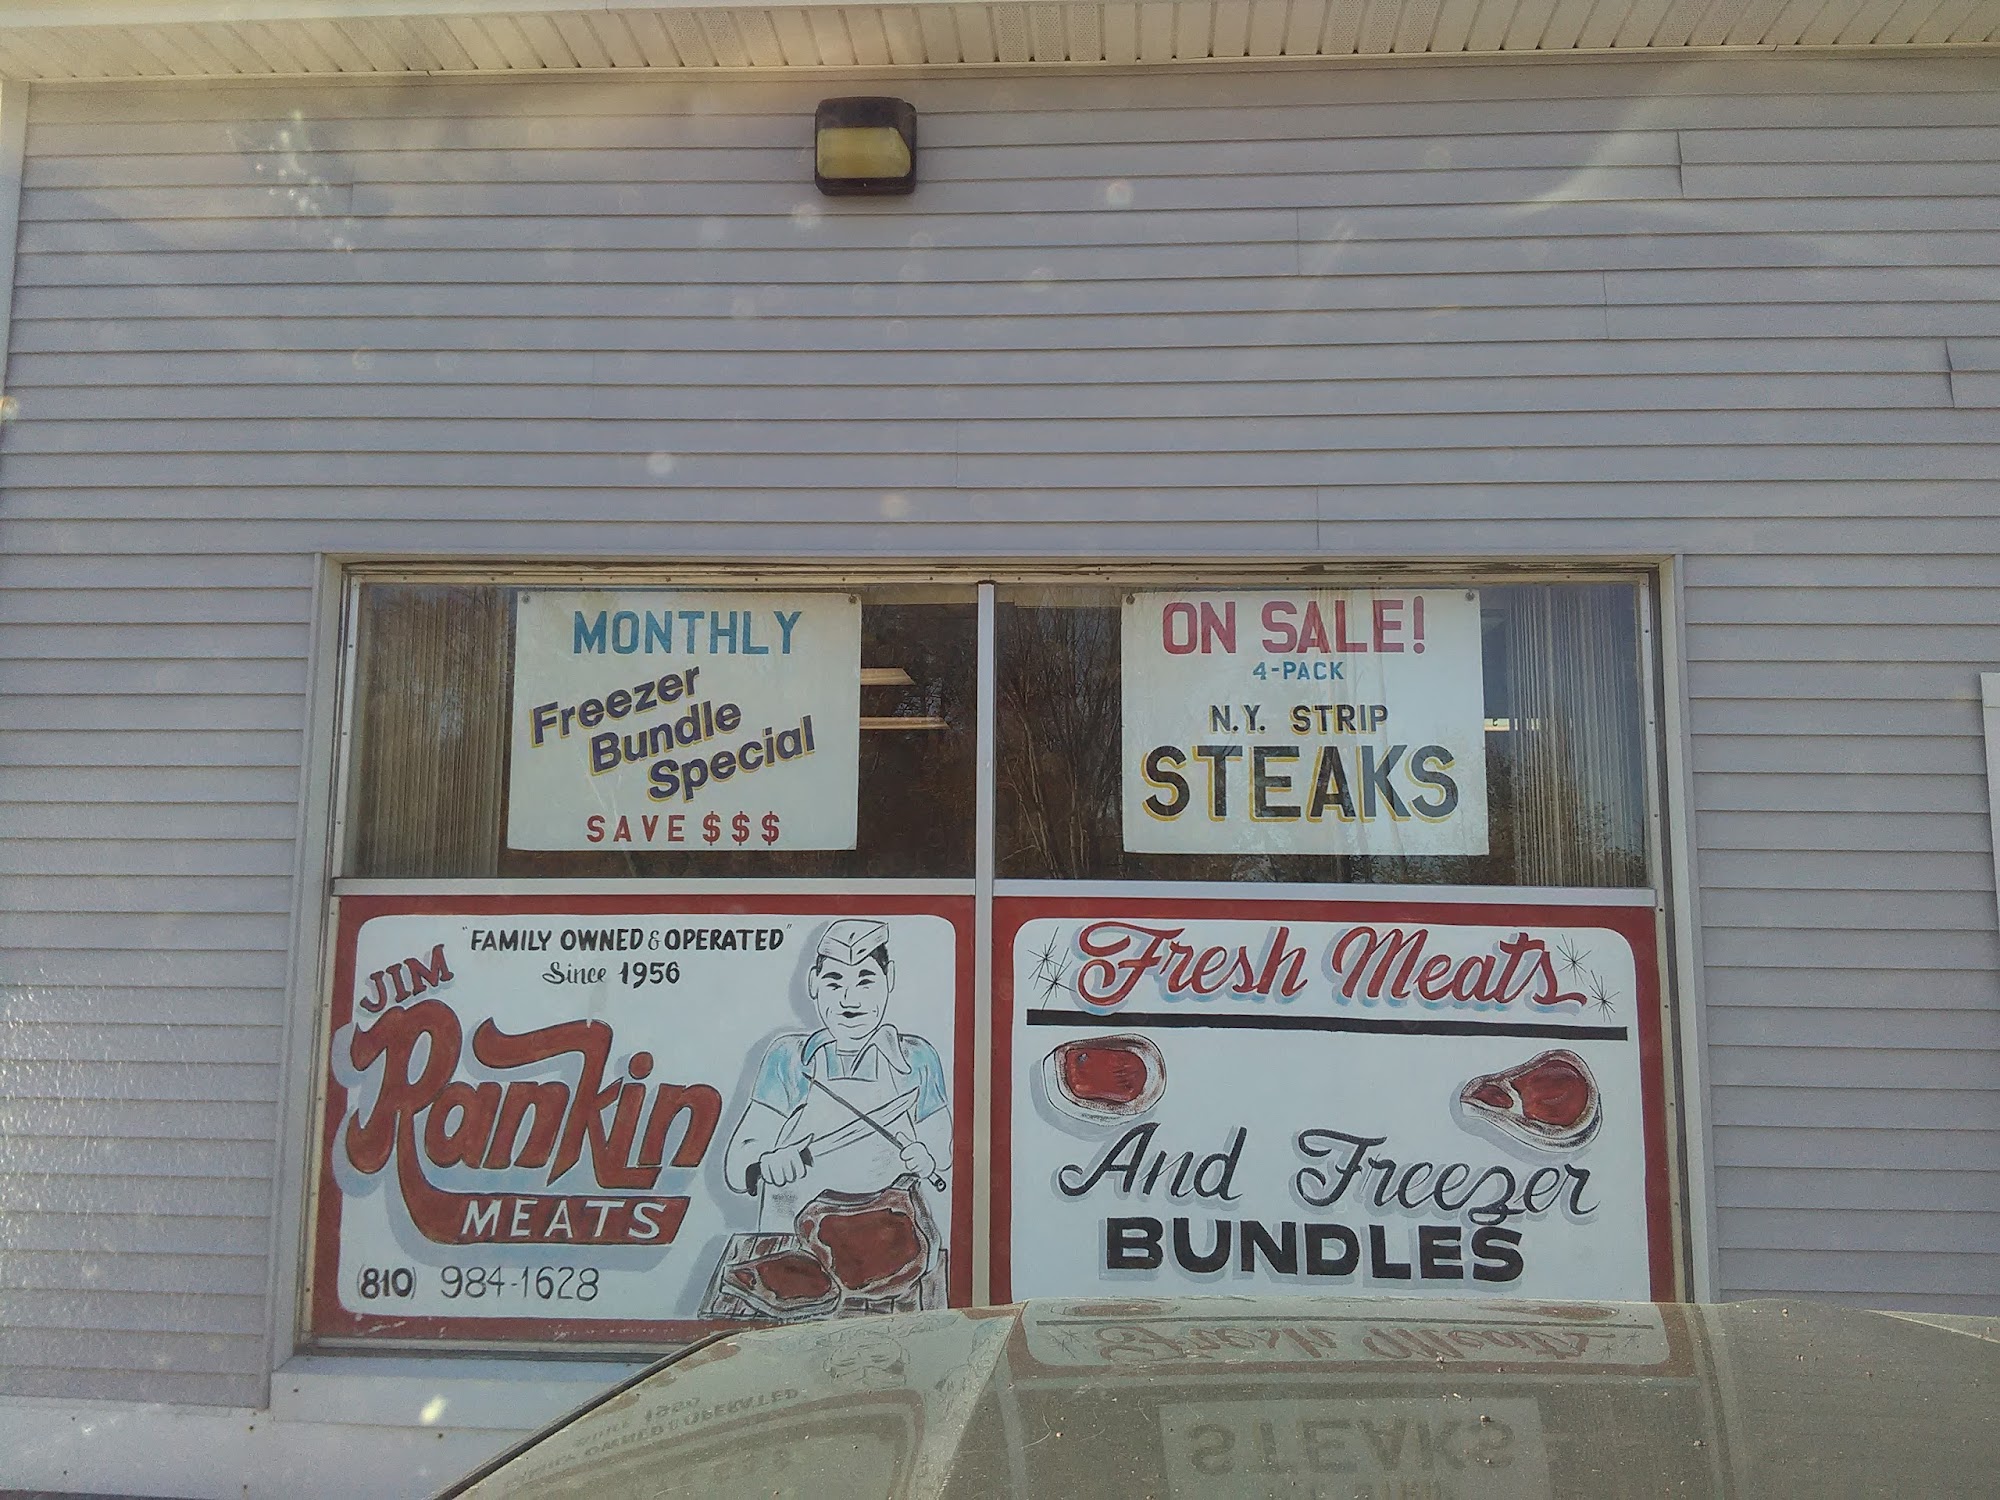 Jimmy Rankin Meats